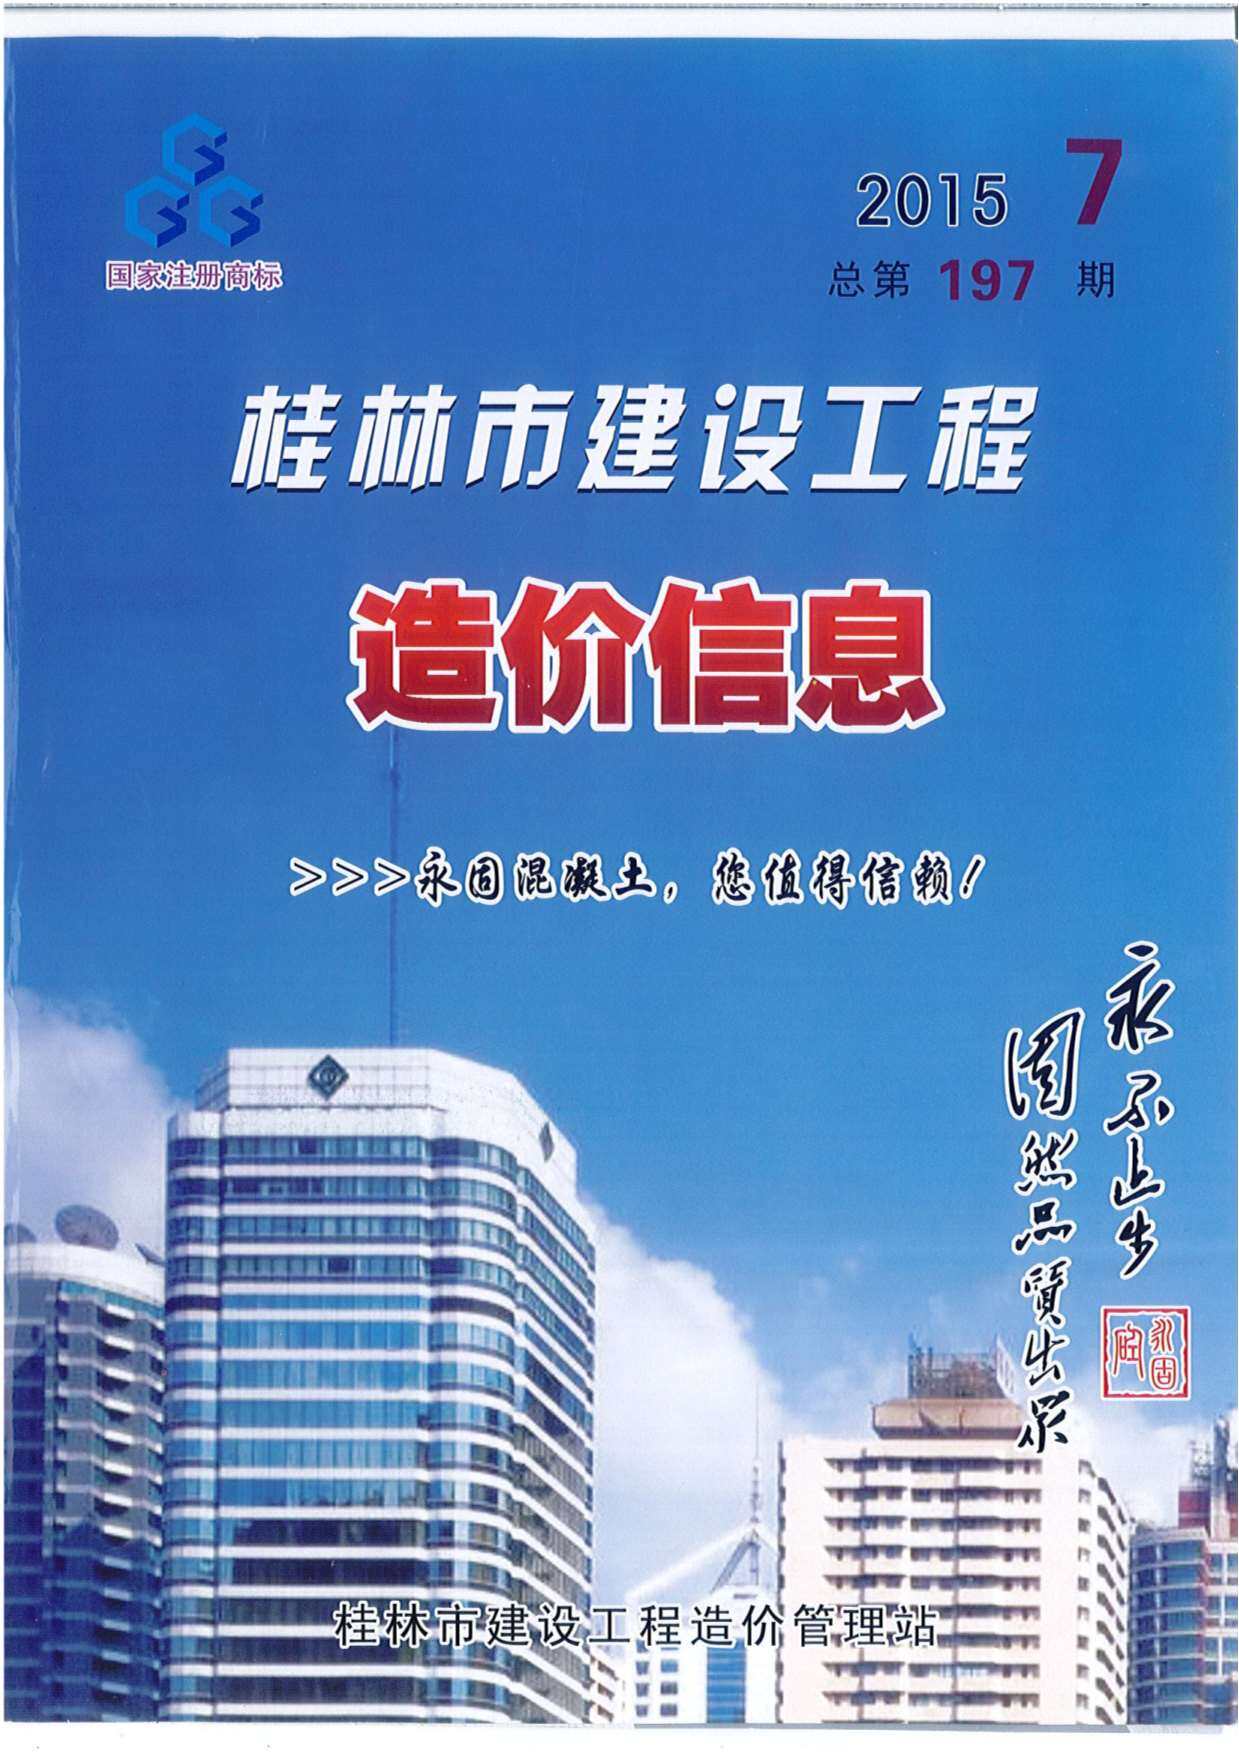 桂林市2015年7月工程造价信息期刊